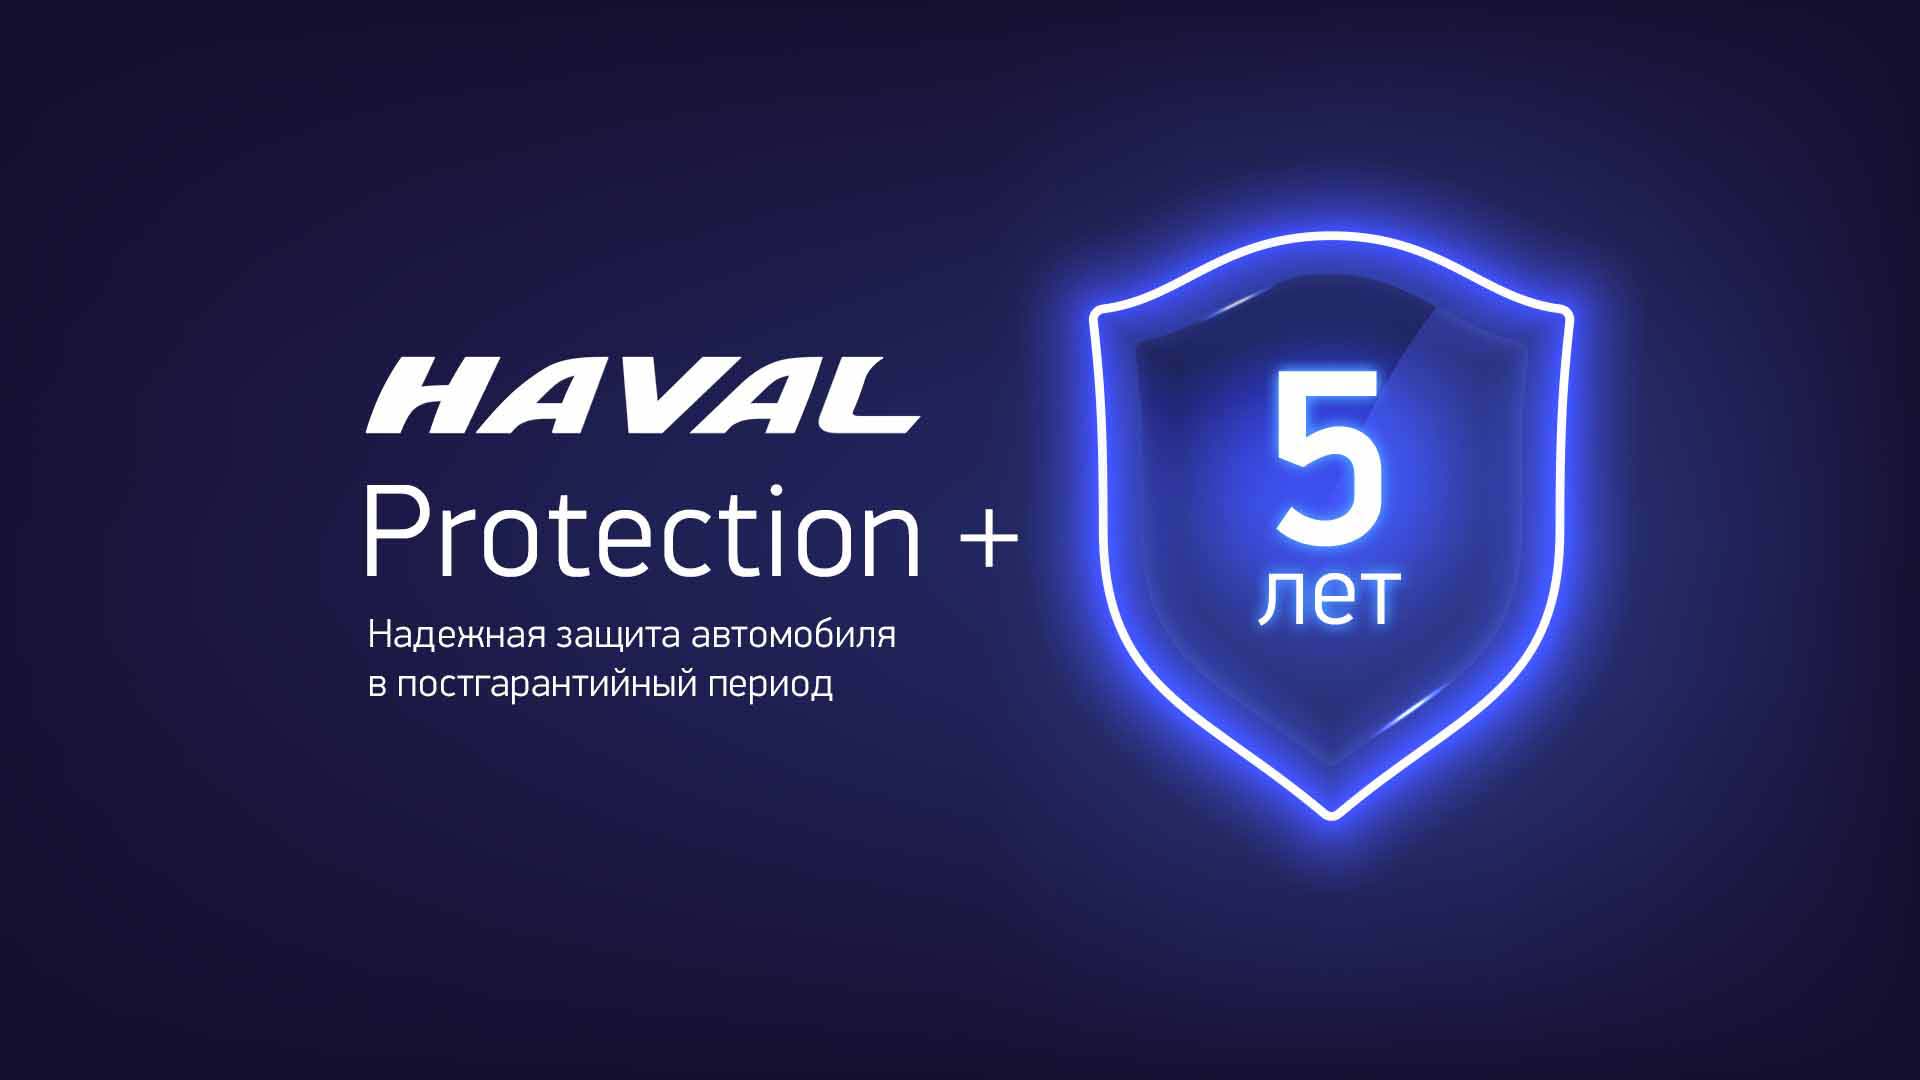 Бесплатное ТО с HAVAL Protection+!